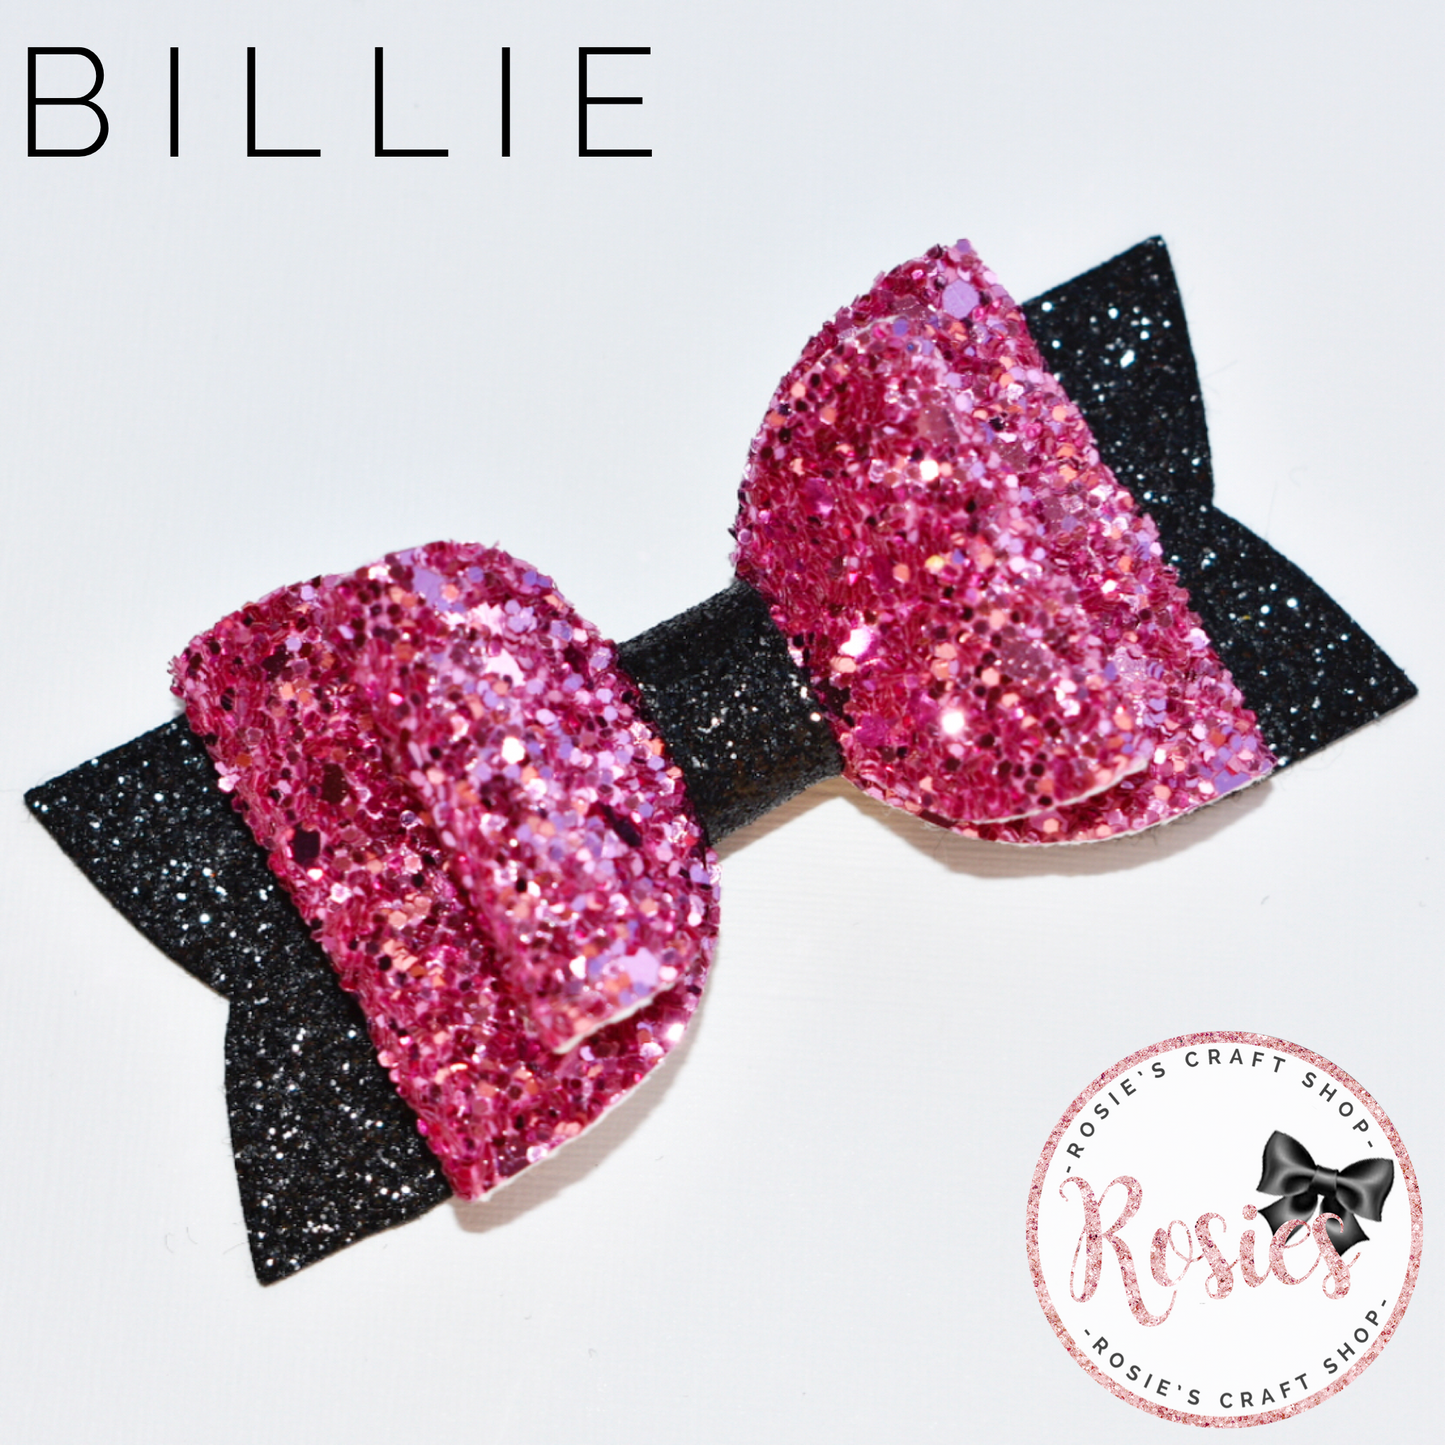 Billie Bow 3.5" / 9cm - Rosie's Craft Shop Ltd